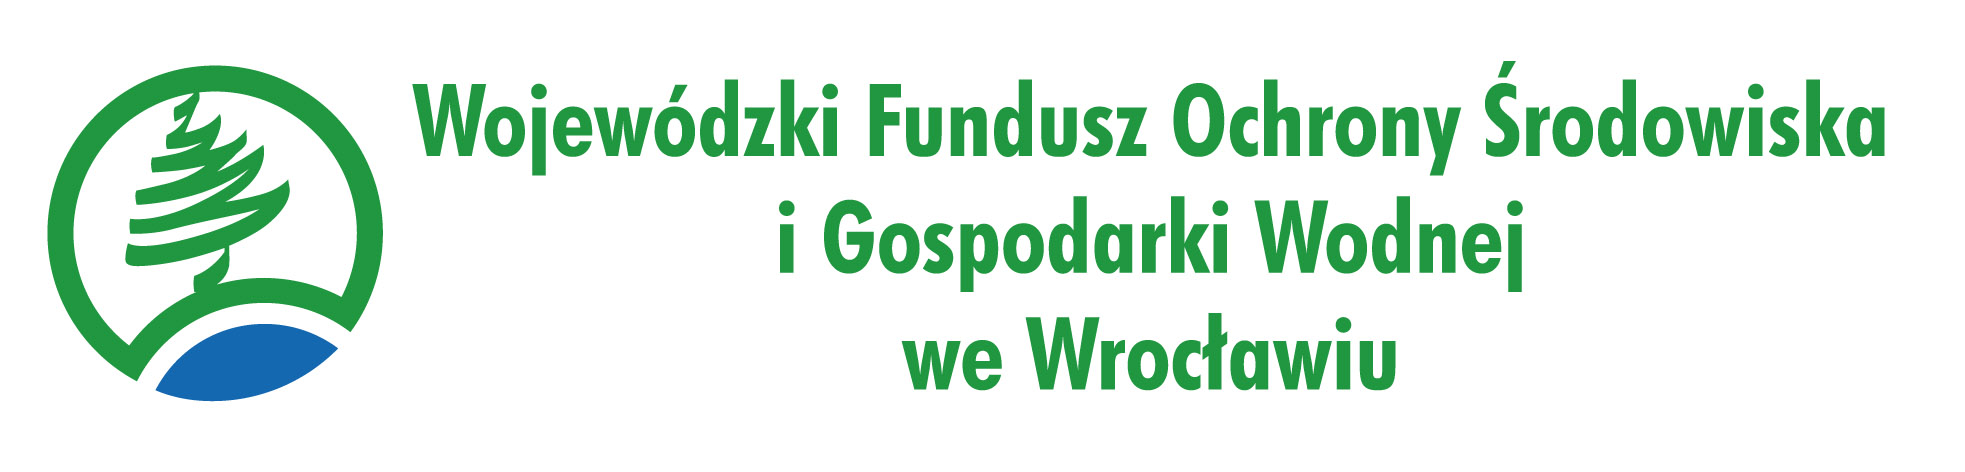 http://wfosigw.wroclaw.pl/files/download_pl/673_logo-jpg.jpg